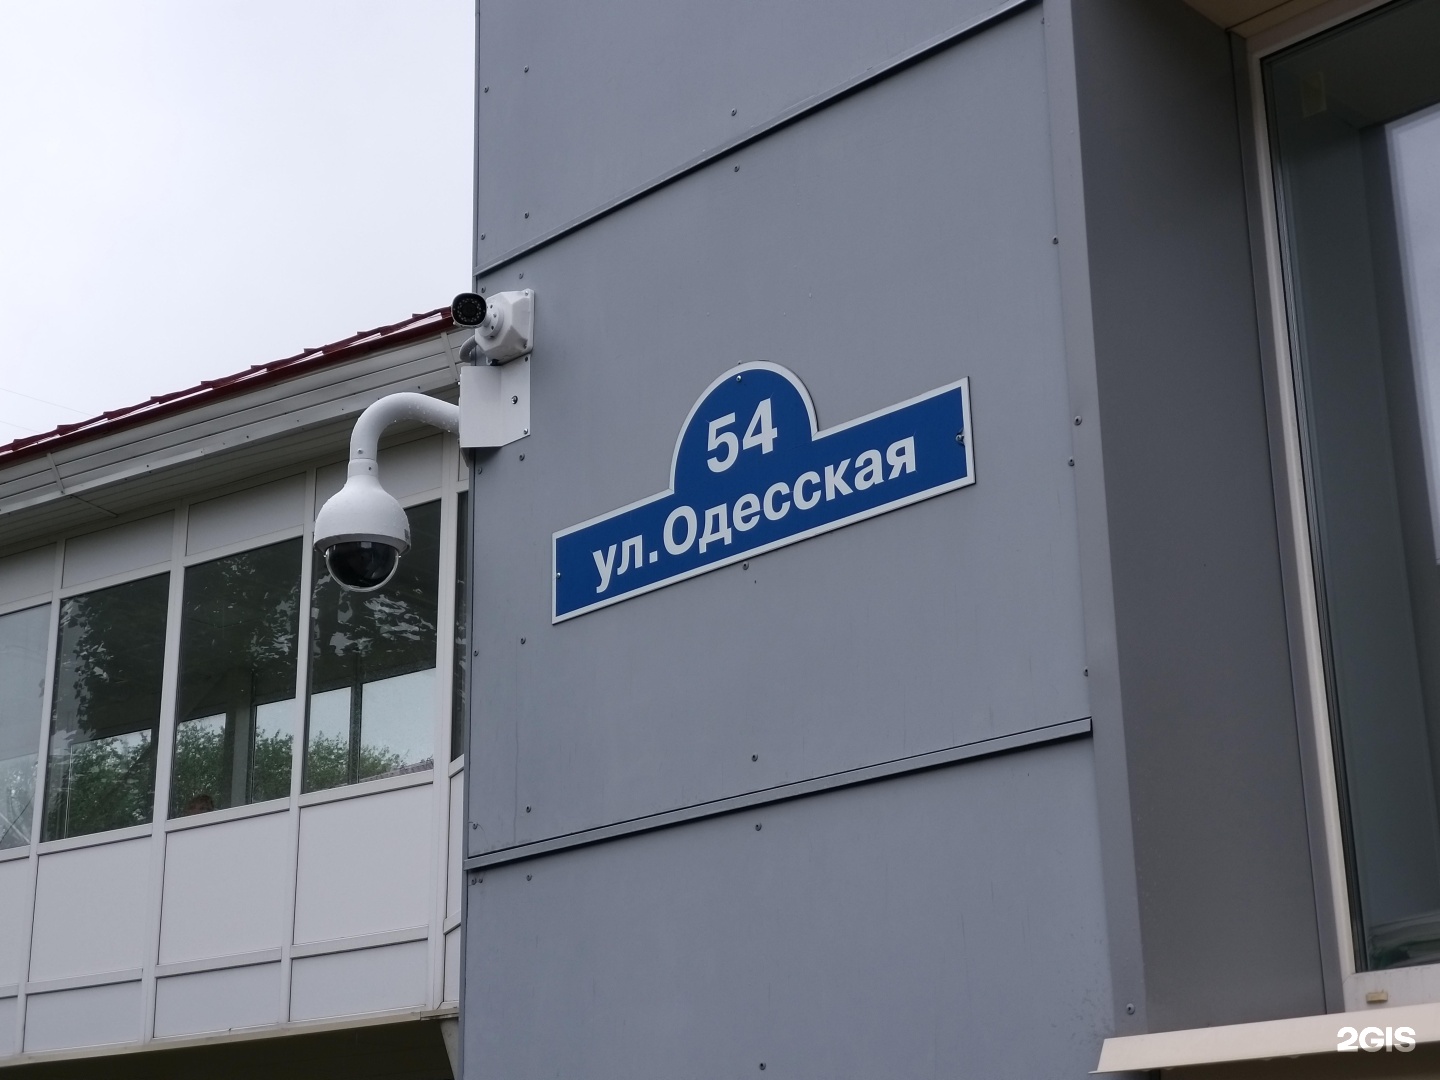 Одесская 54 тюмень. Одесская 54 Тюмень поликлиника. Одесская 54 Тюмень на карте.